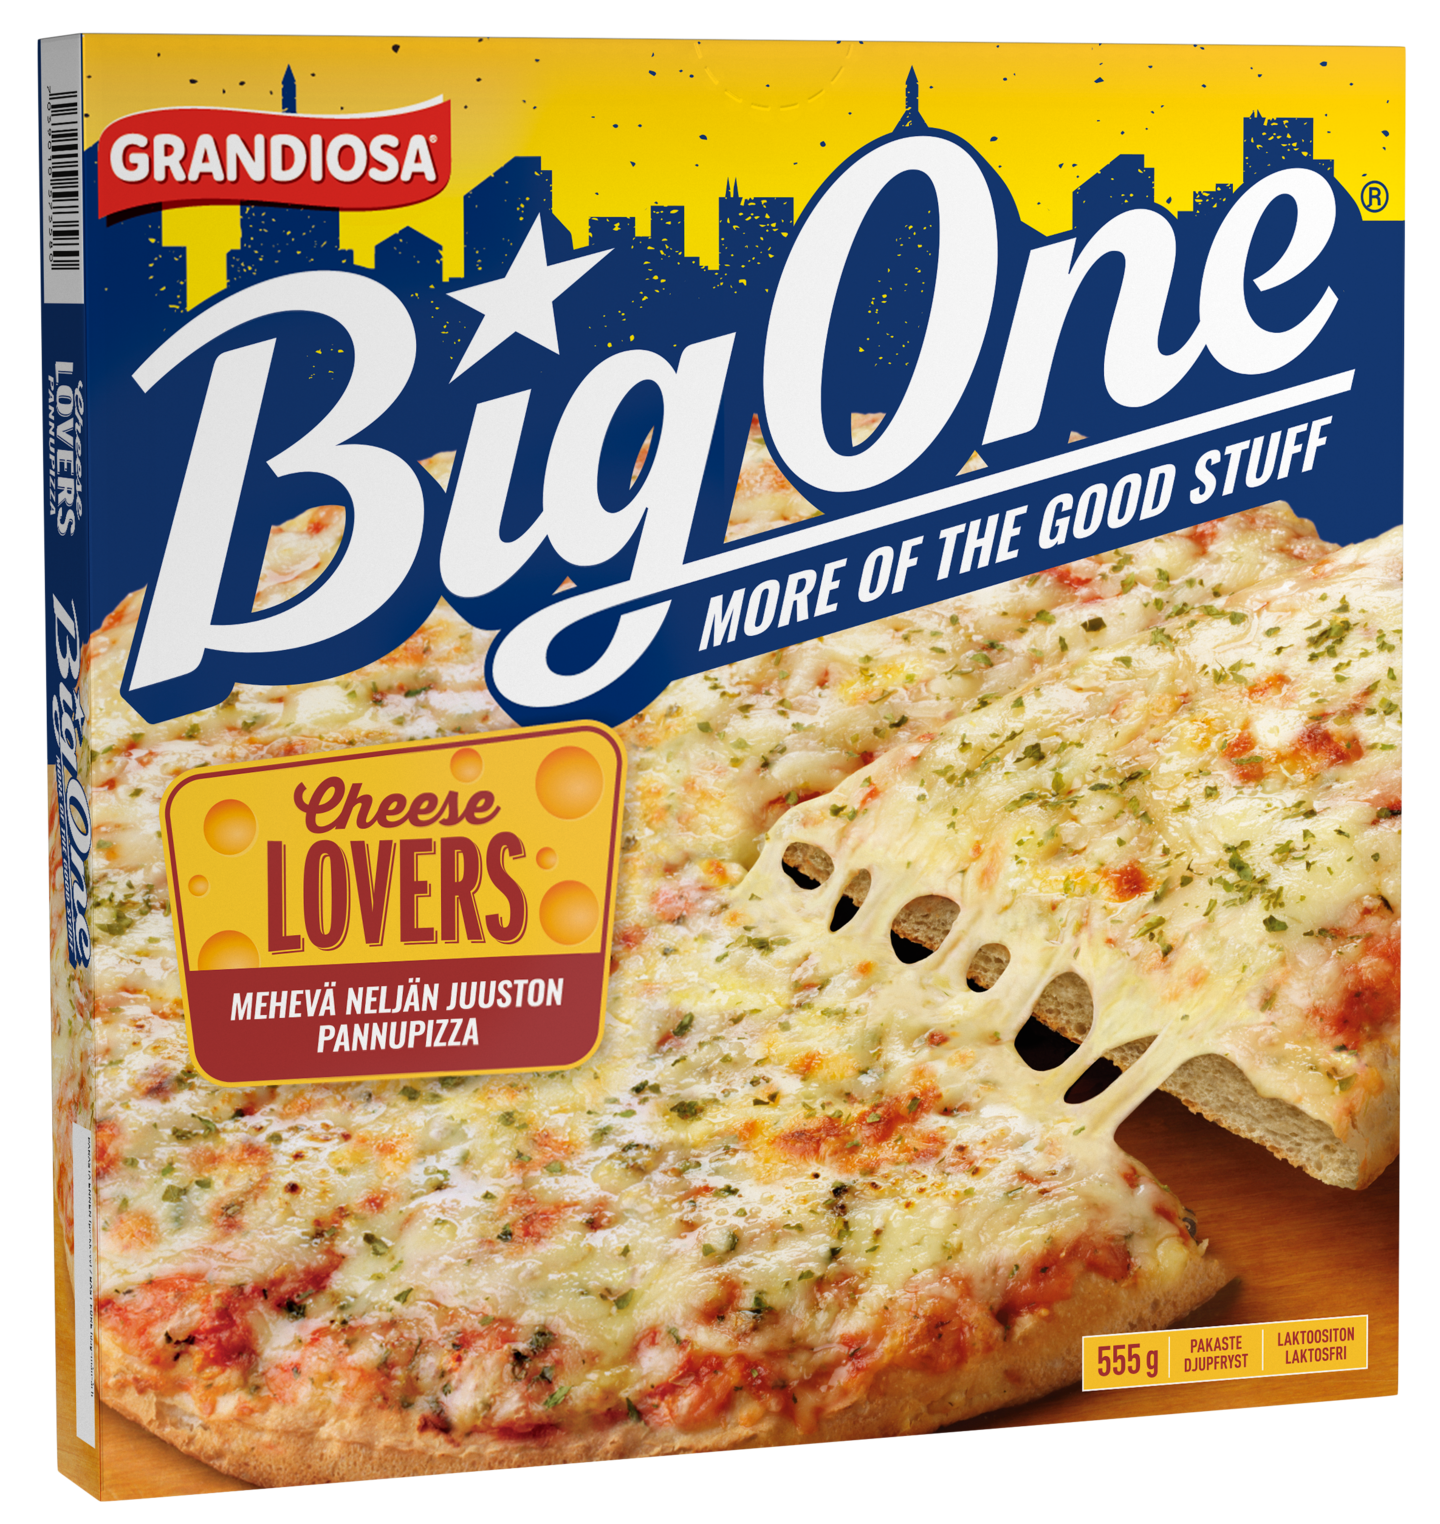 Grandiosa Big One cheese lovers pan pizza 555g pakaste